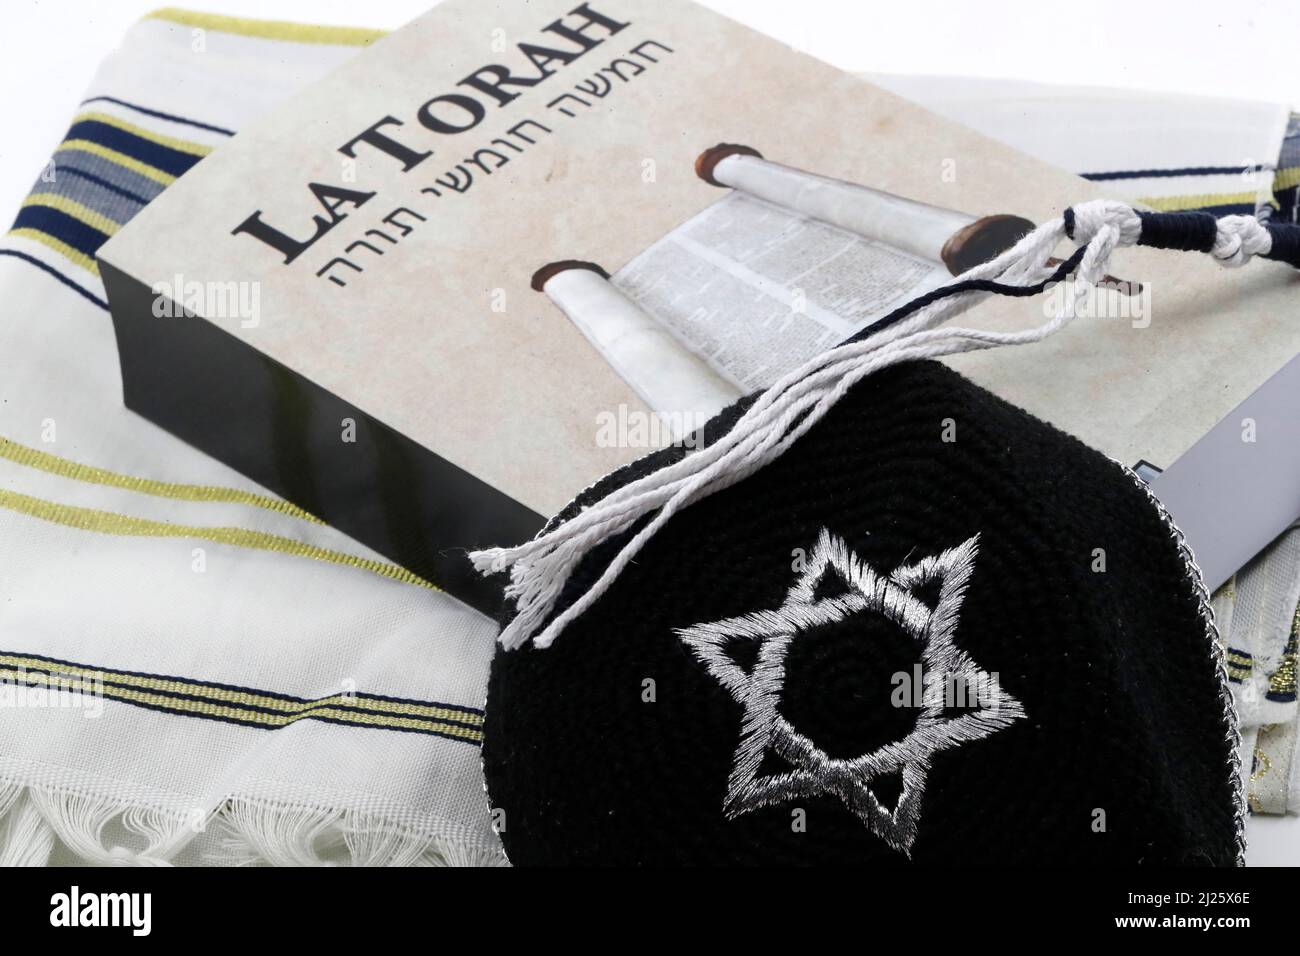 Torah, tallit  and kippah. Jewish symbols. Stock Photo